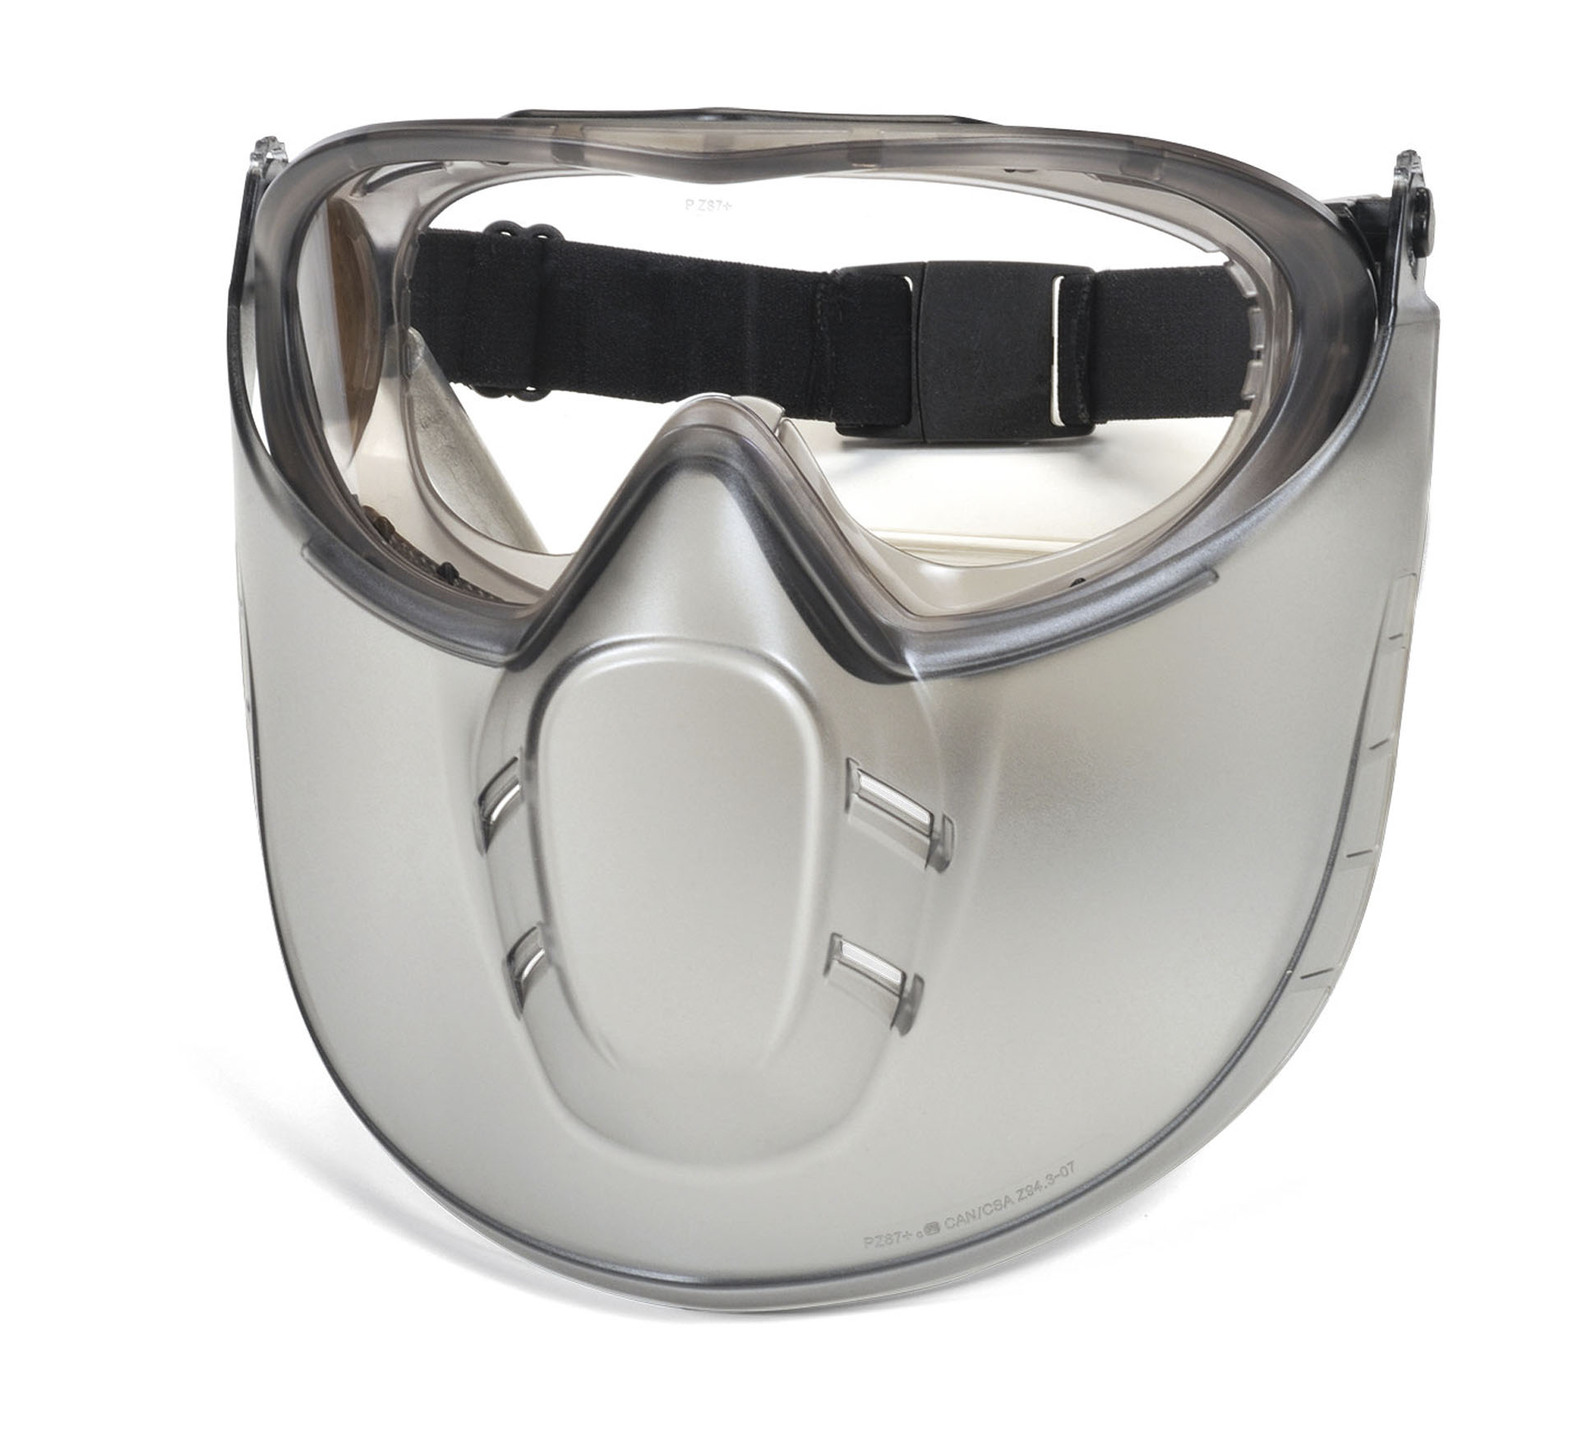 Защитные очки от пыли. Маска-очки Pyramex Capstone g604t2. Очки защитные Capstone Shield egg504tshield. Маска mil PRF 32432 очки. Очки защитные Gigant gg-005.